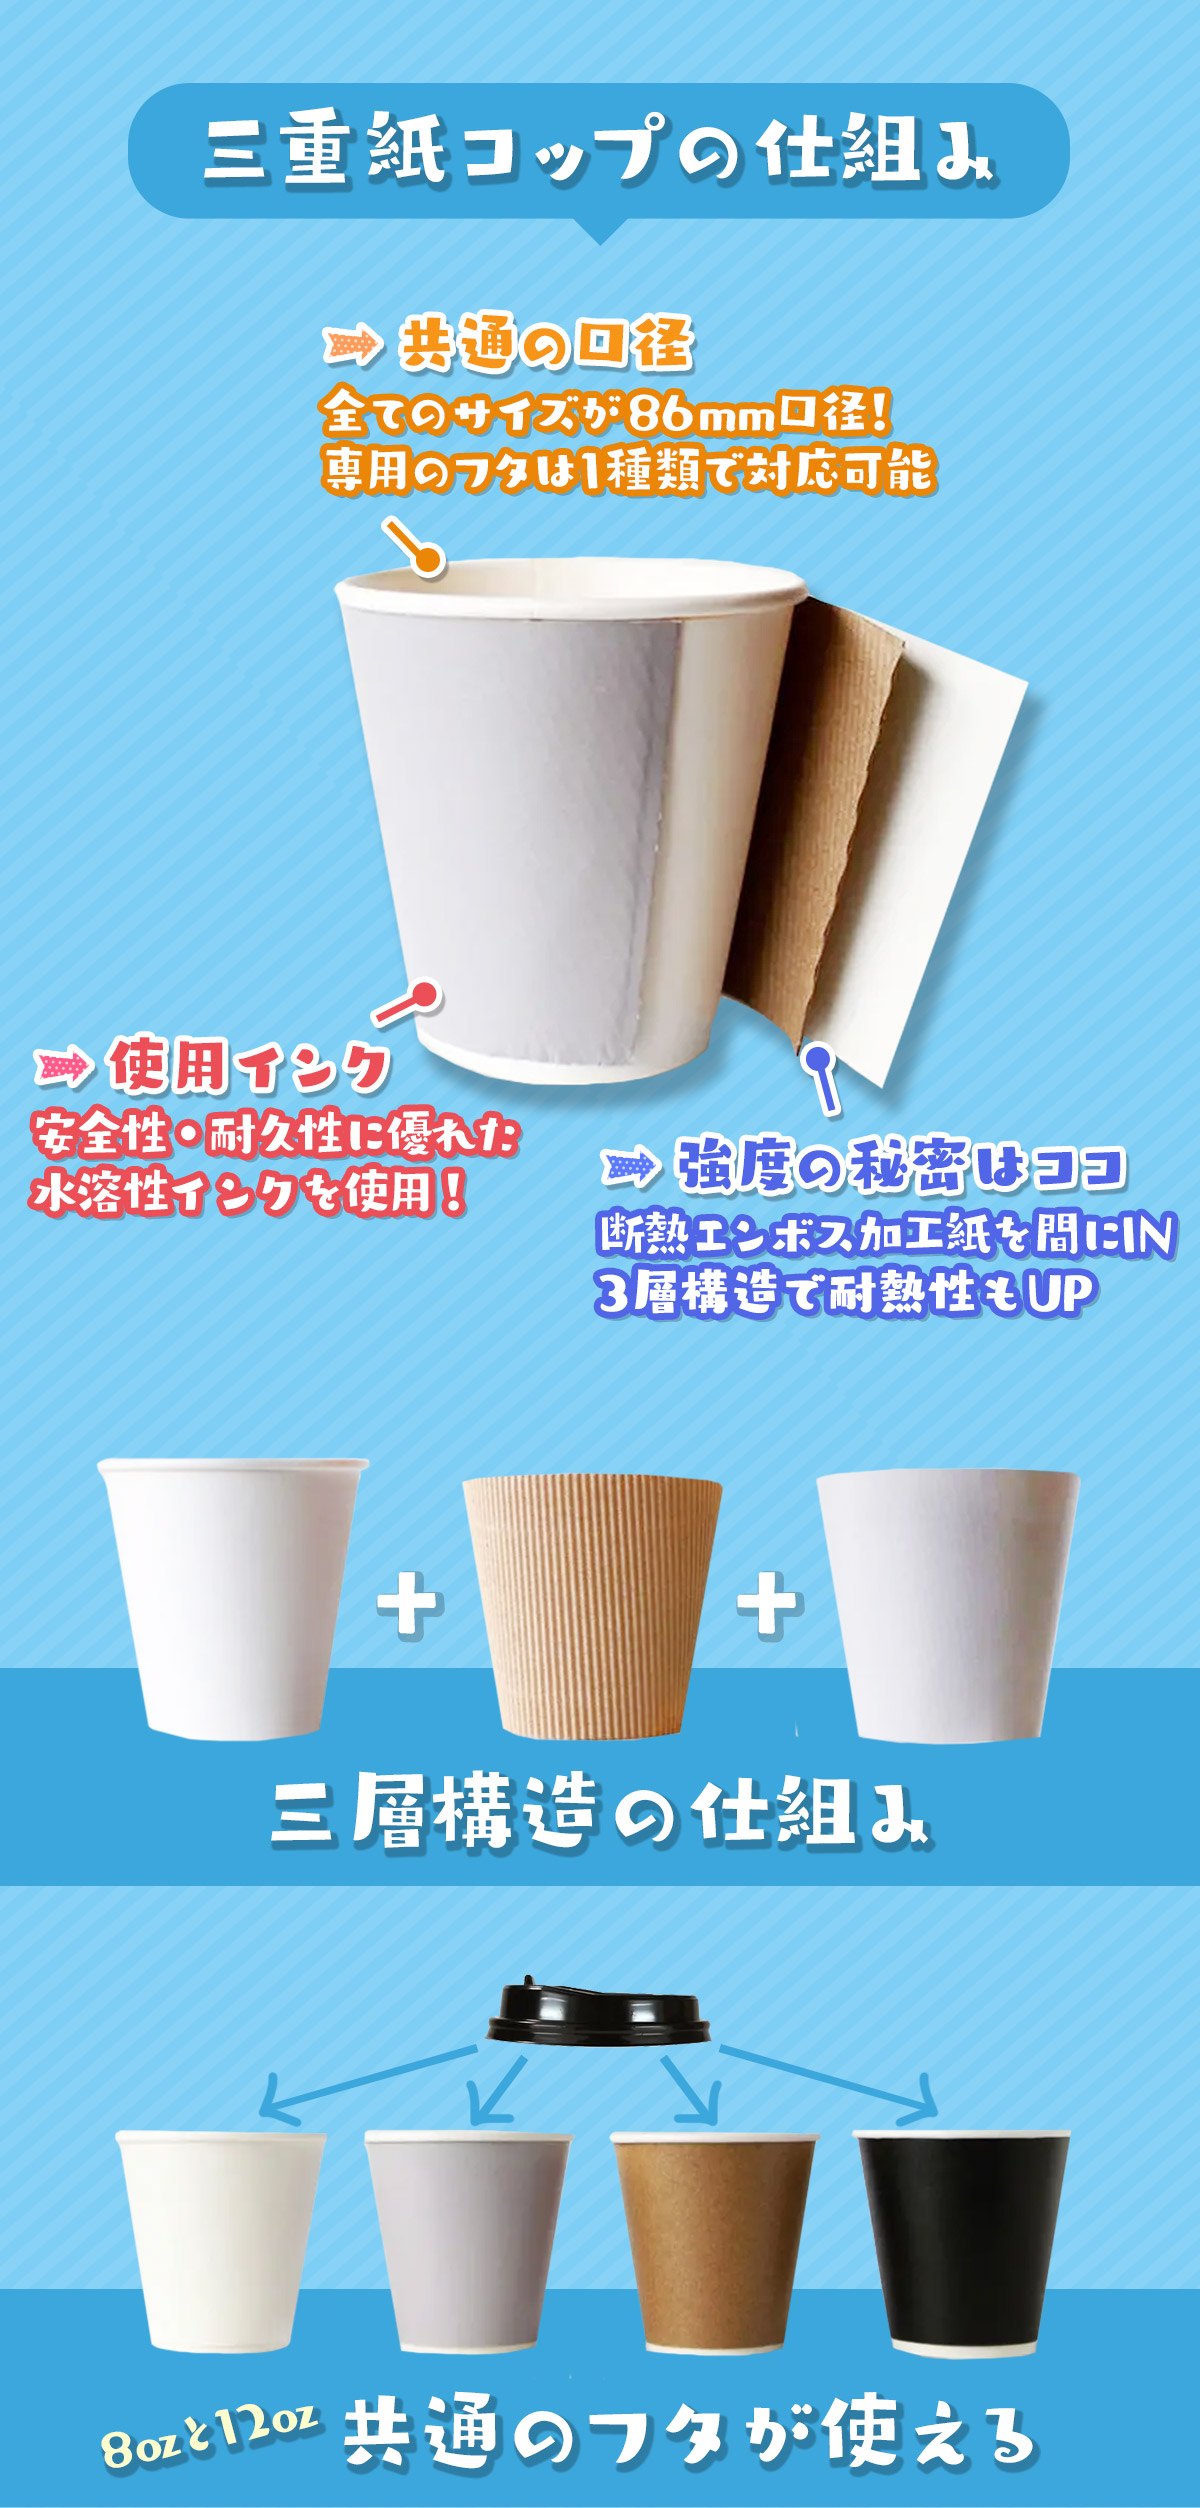 脱プラスチックの紙コップ商品 ホット・アイス兼用